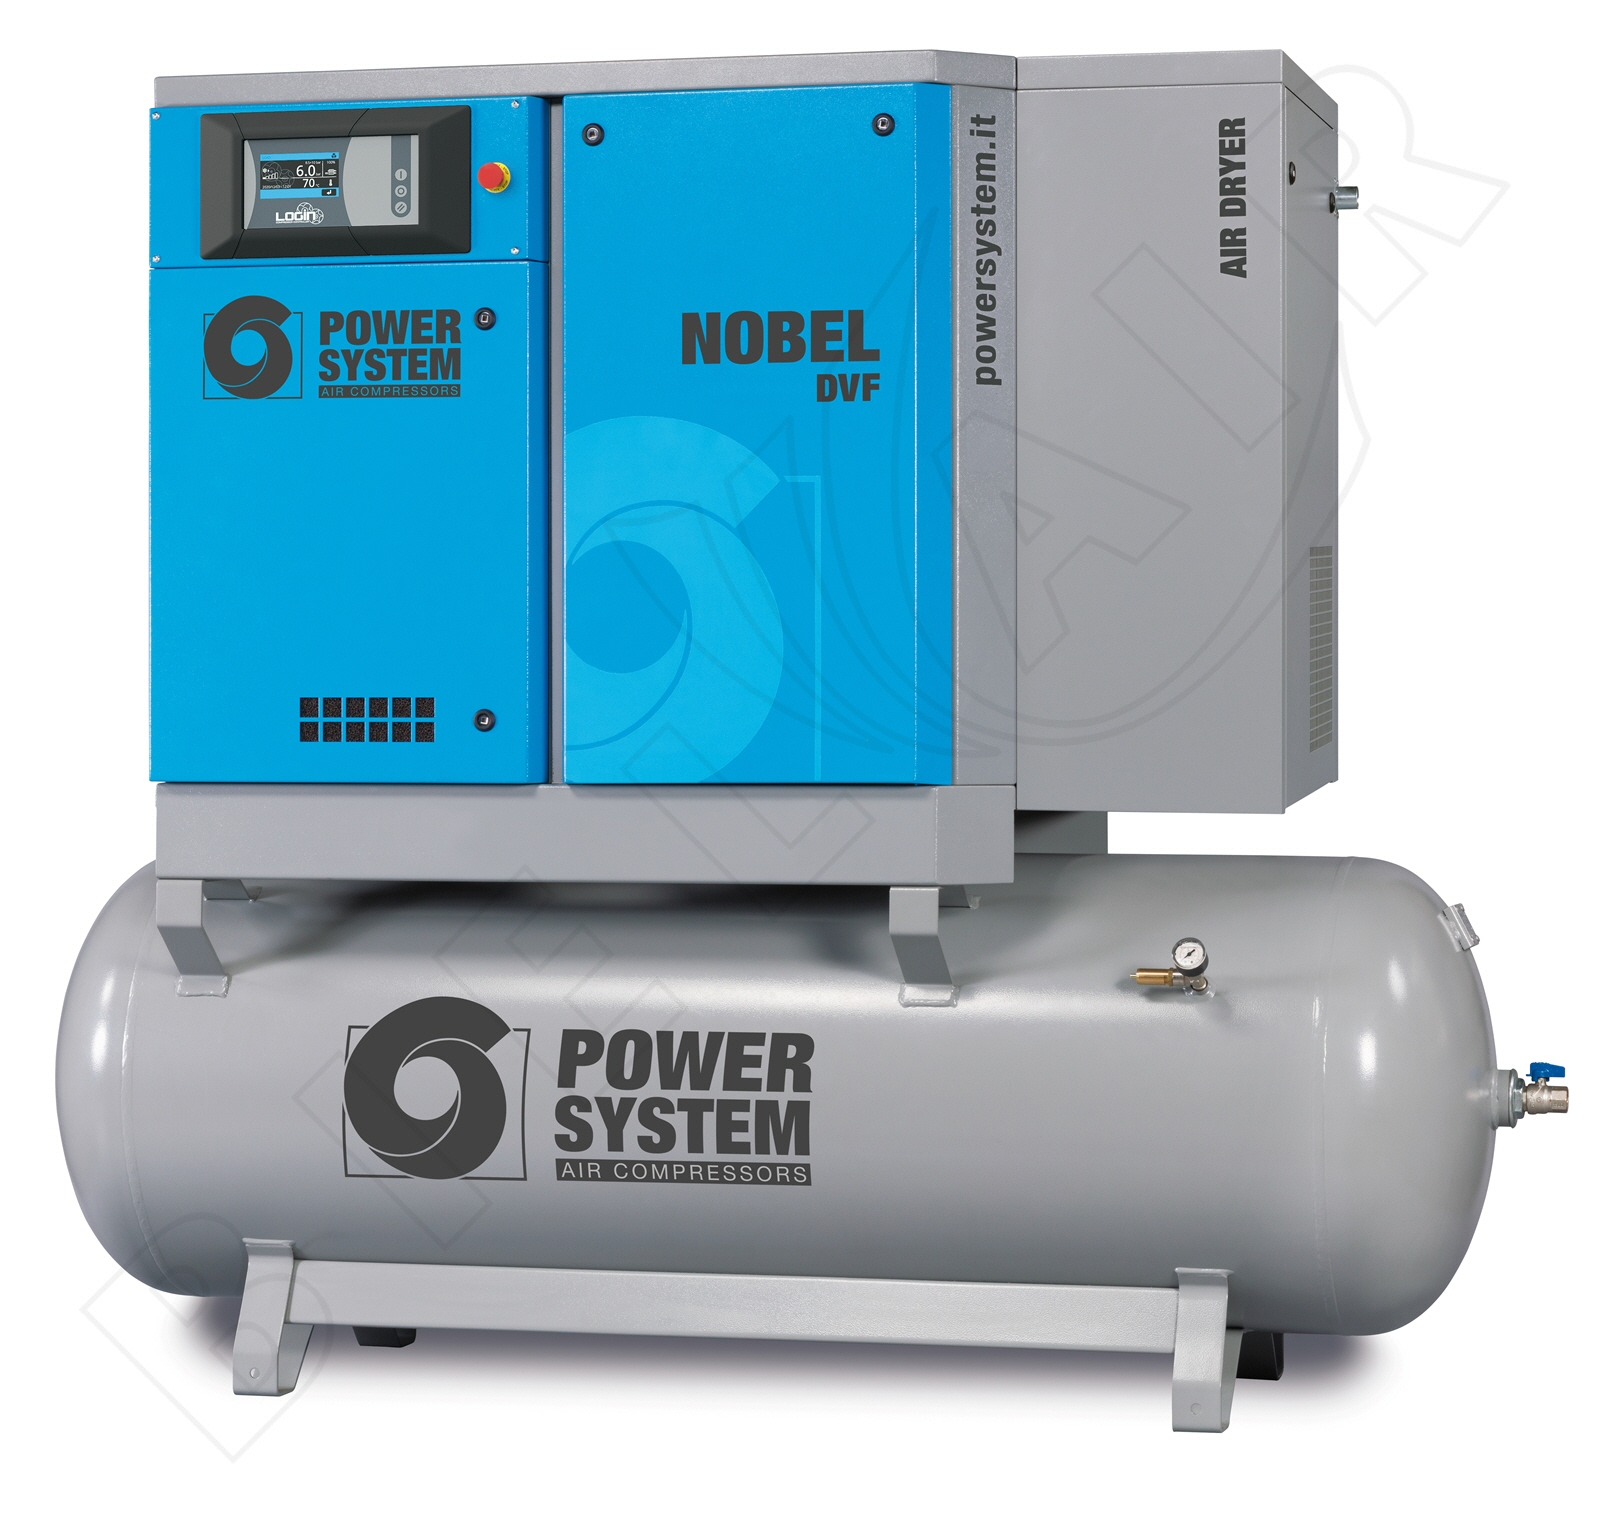 POWERSYSTEM Schraubenkompressor NOBEL 11-10 500 DVF (IE3) LOGIN Frequenzgesteuert mit Behälter und Kältetrockner